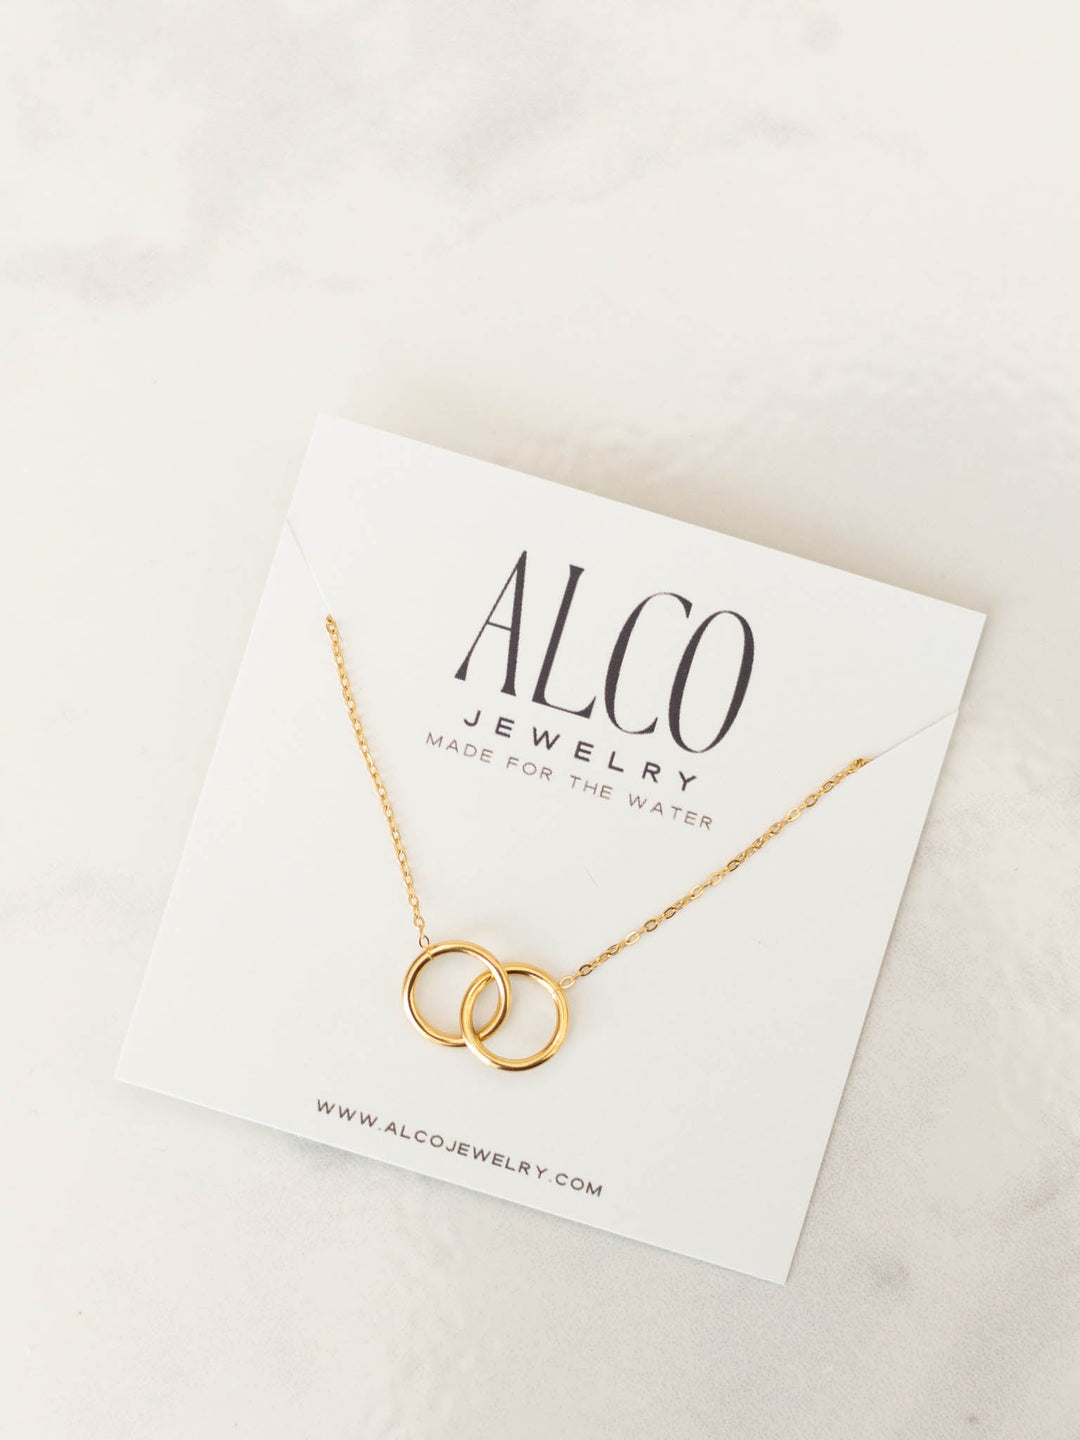 ALCO Perfect Timing NecklacePremium necklace